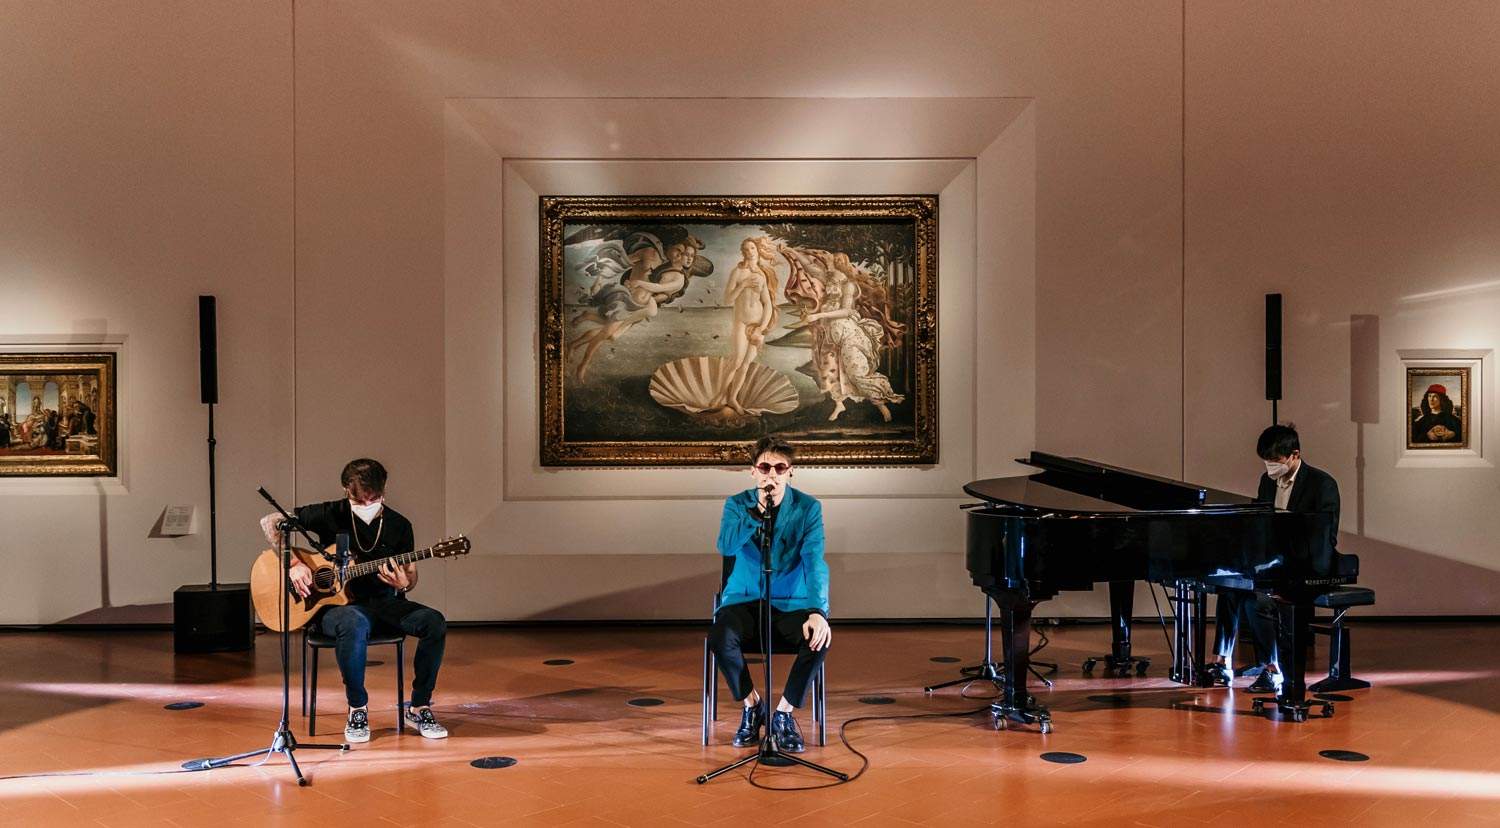 Uffizi, il cantante Emanuele Aloia gira un video davanti alla Venere di Botticelli